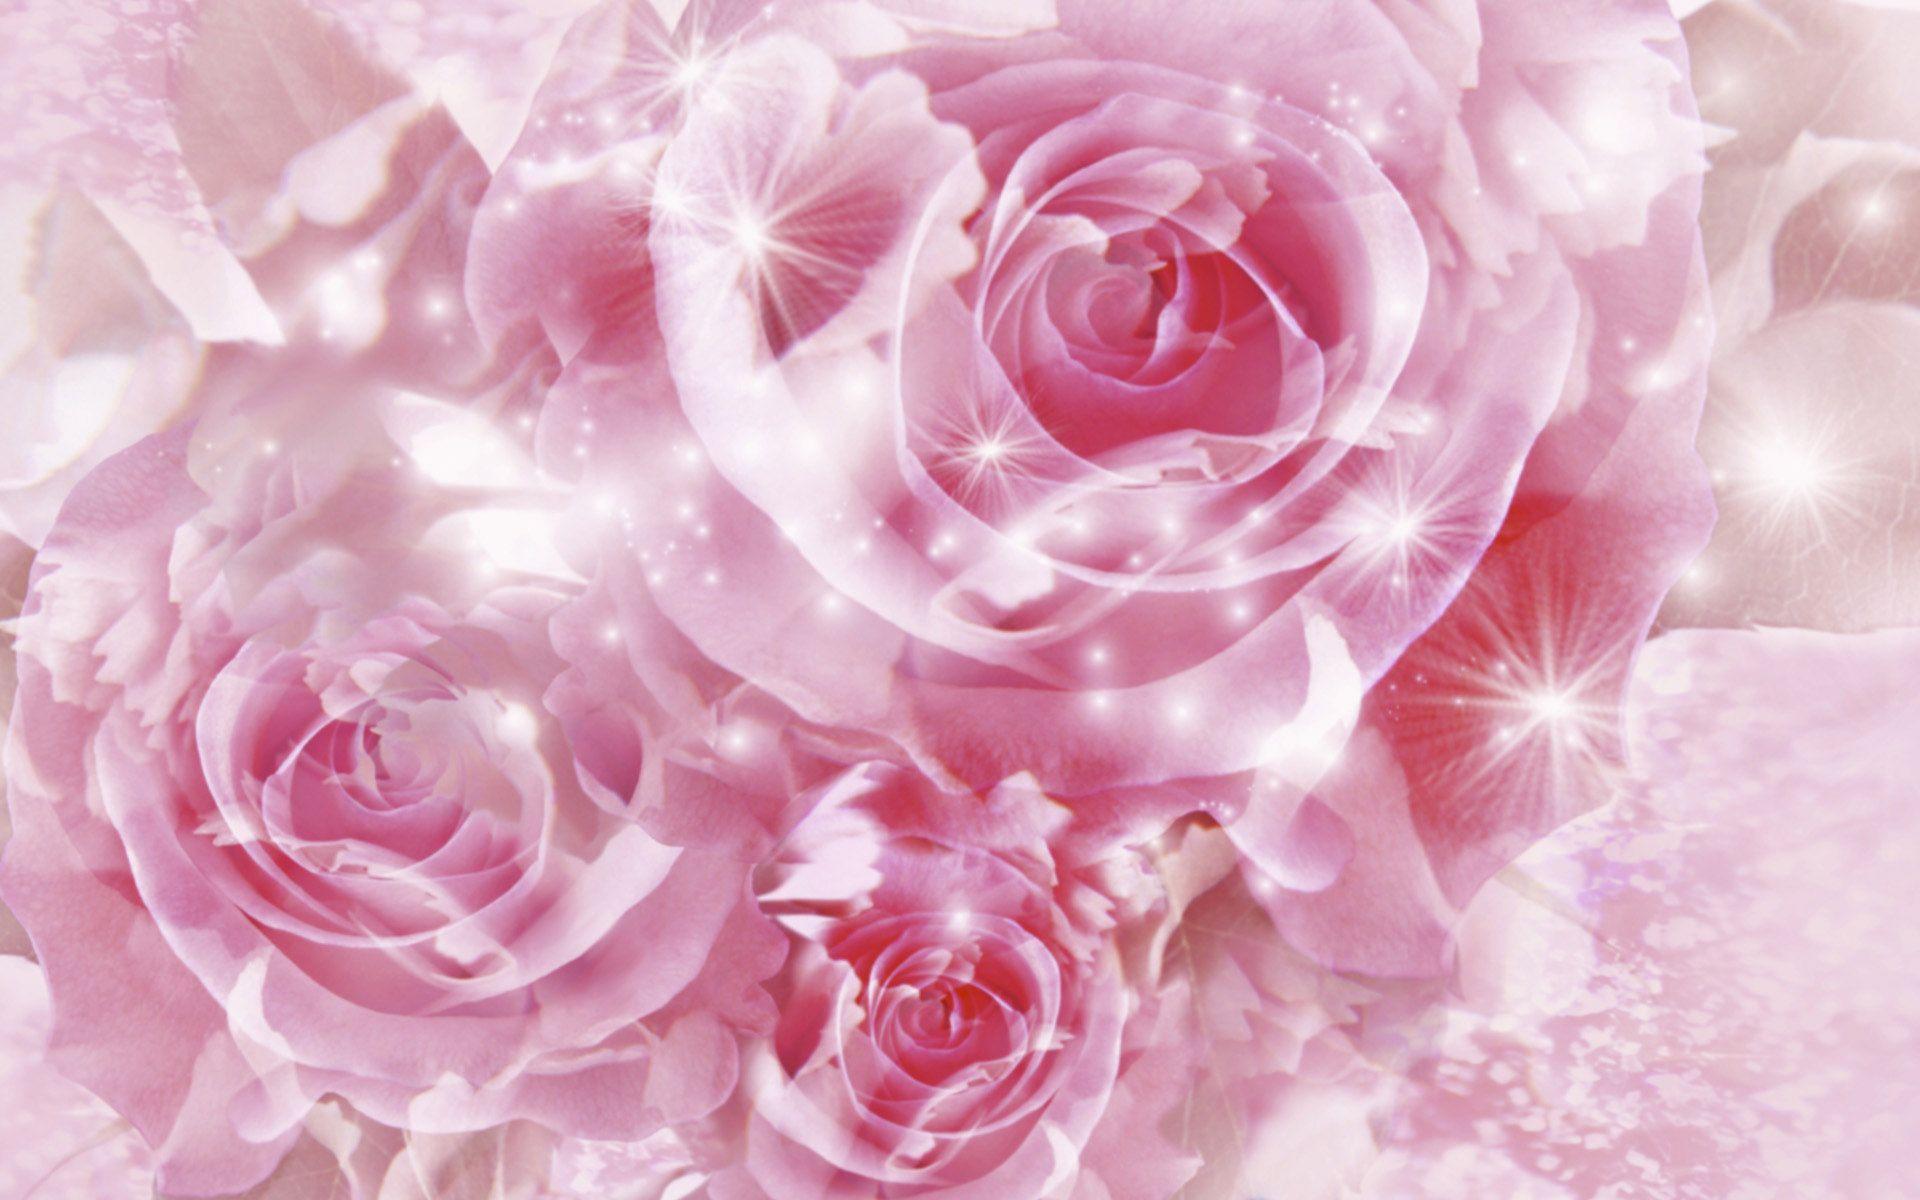 Hình nền hoa hồng này sẽ khiến bạn đắm chìm trong nét đẹp tinh tế và lãng mạn của hoa hồng. Với những cánh hoa đỏ tươi sáng và hình dáng hoàn hảo, bức tranh này sẽ mang đến cho bạn một trải nghiệm hình ảnh tuyệt vời khi xem trên màn hình máy tính của mình.